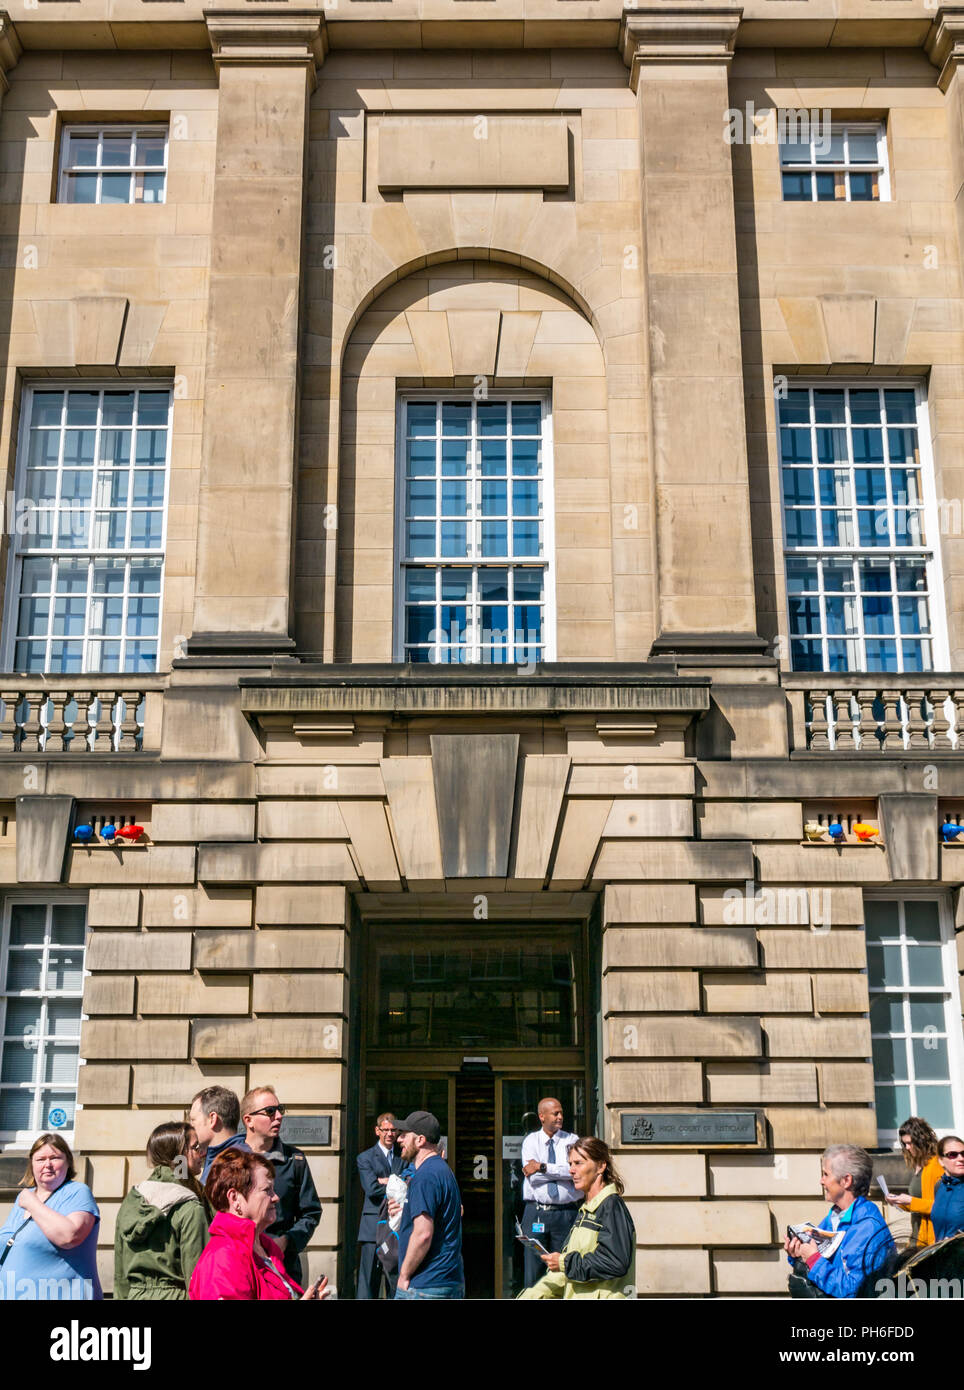 Vor Edinburgh High Court von Justiciary, Royal Mile, Edinburgh, Schottland, Großbritannien während Festival mit Menschen und Wachpersonal vorbei gehen. Stockfoto